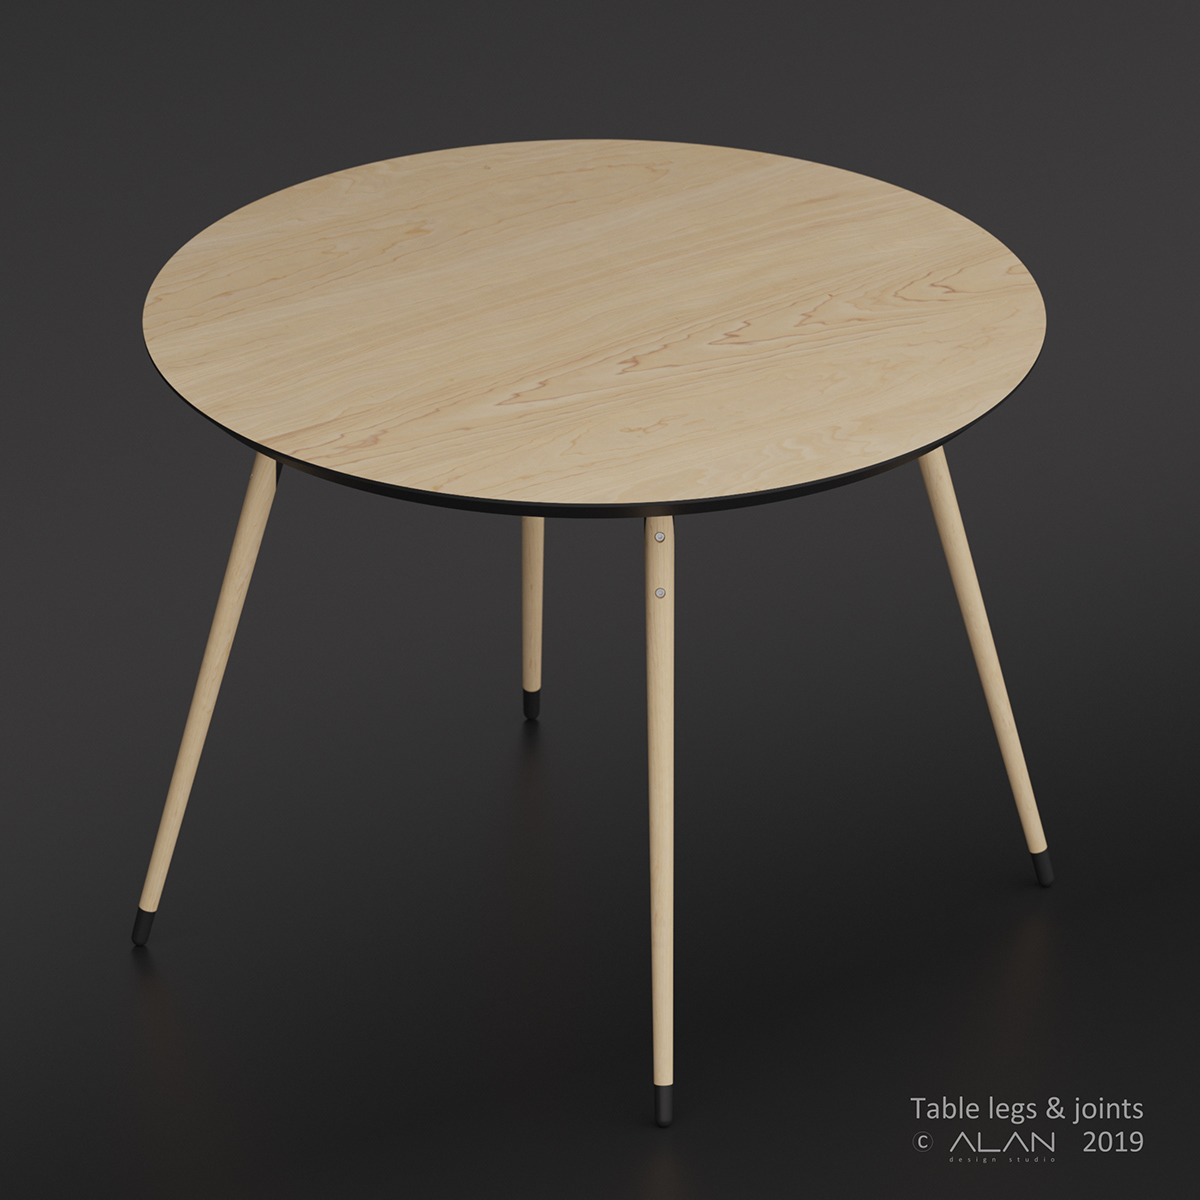 alankravchenko design furniture table legs joints